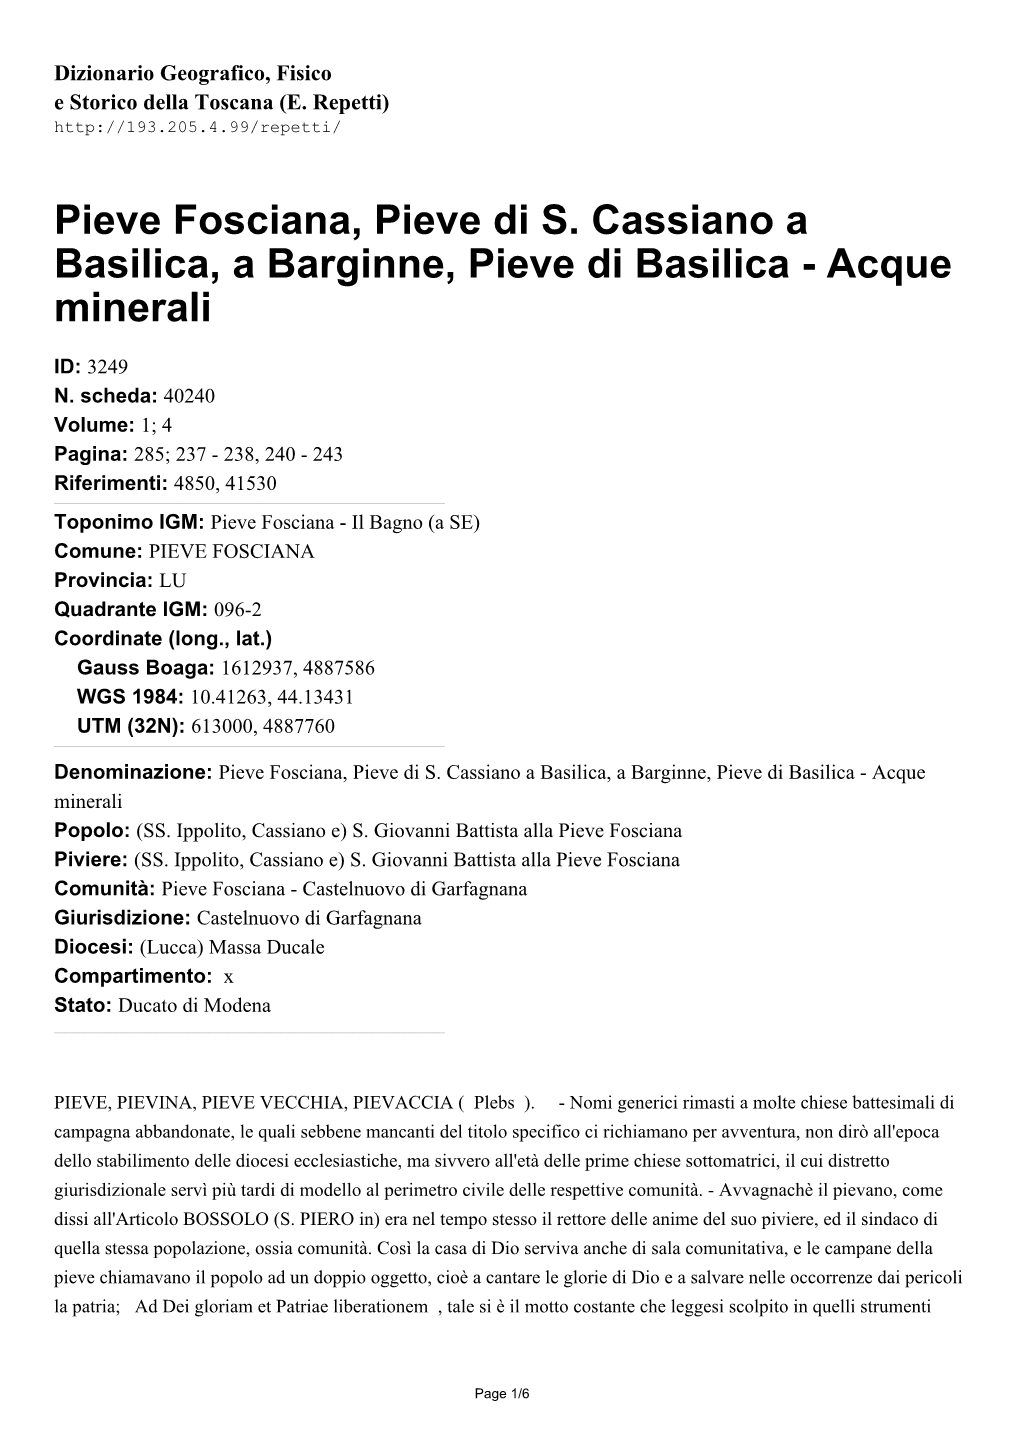 Pieve Fosciana, Pieve Di S. Cassiano a Basilica, a Barginne, Pieve Di Basilica - Acque Minerali